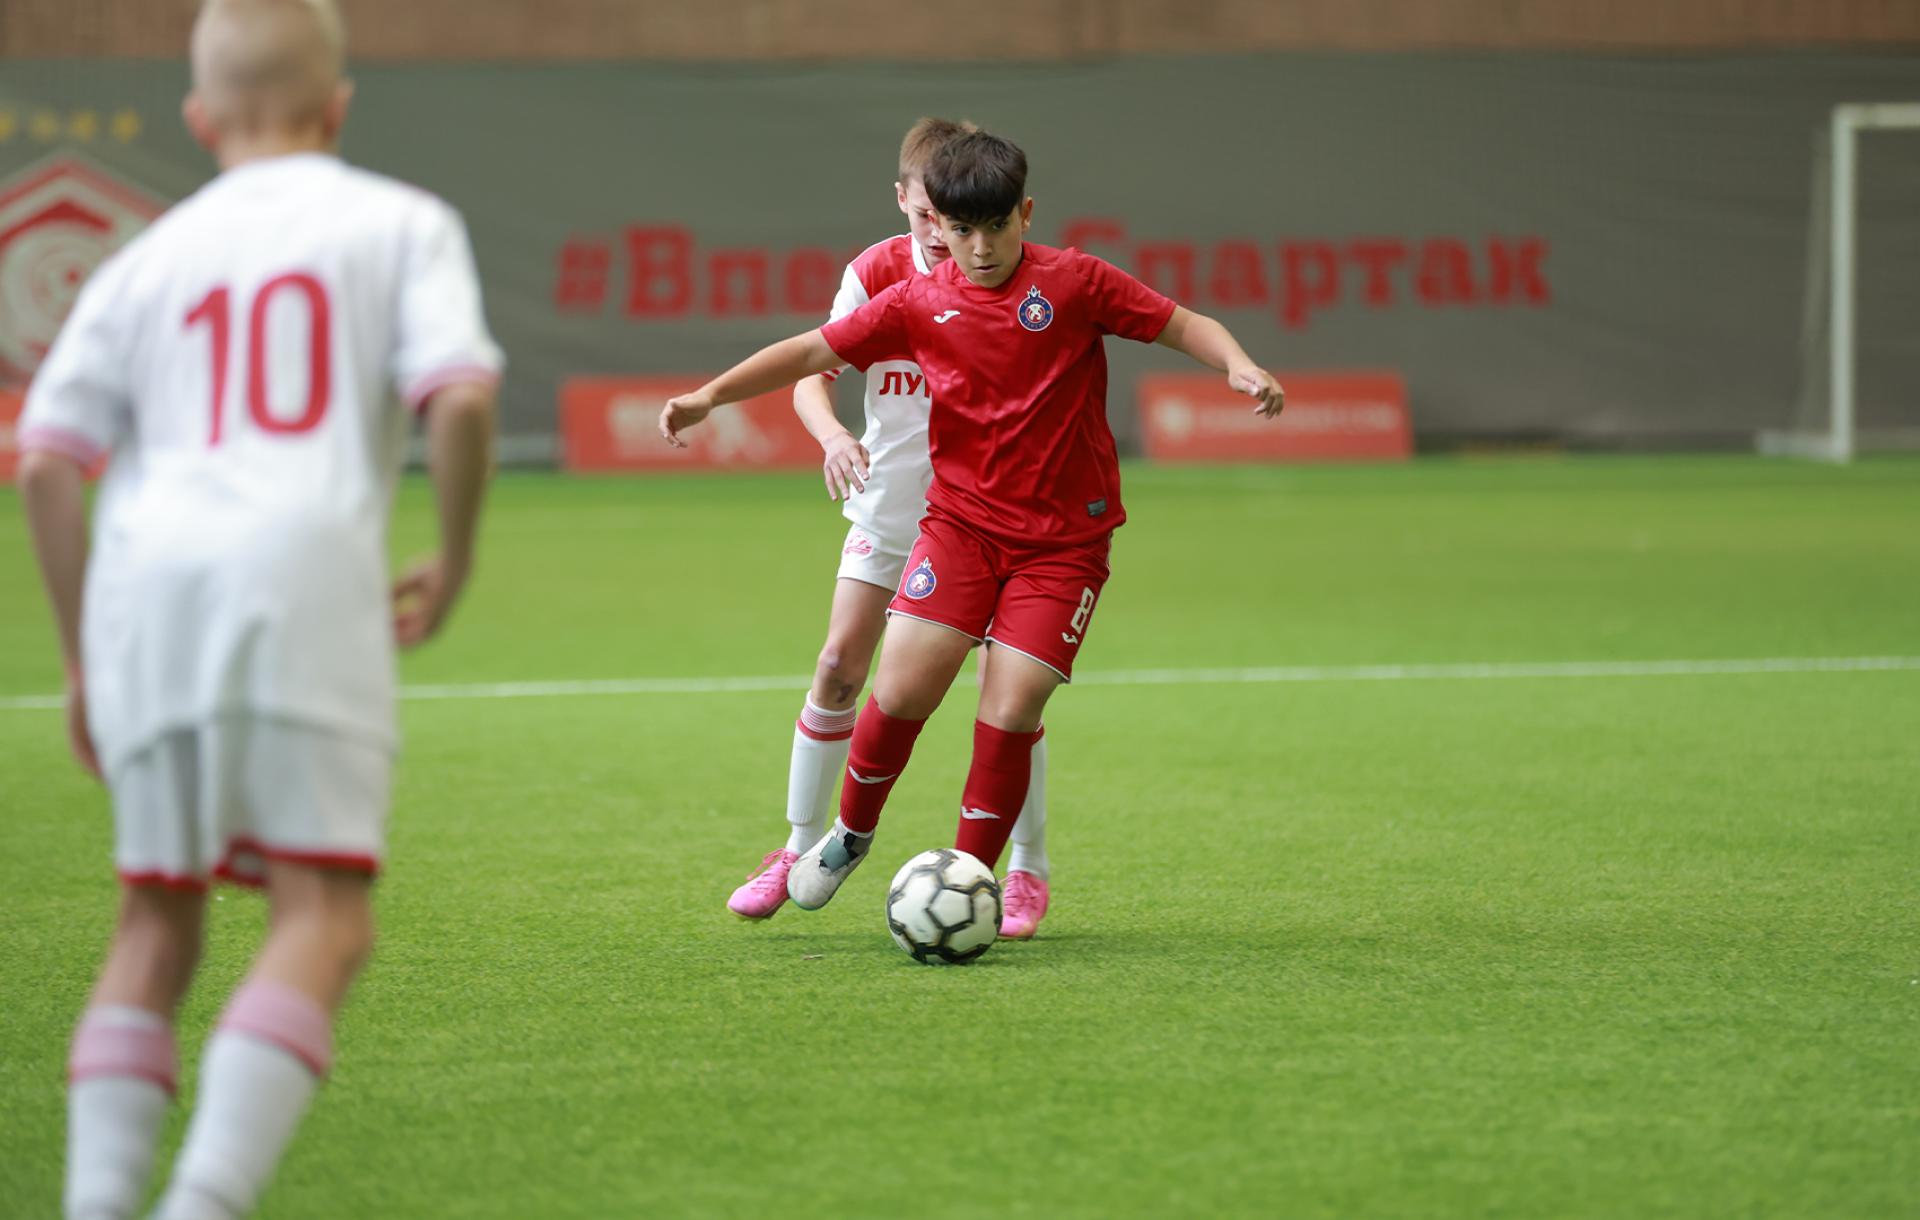 Moscow tournament: Pyunik-2011 loses to Spartak